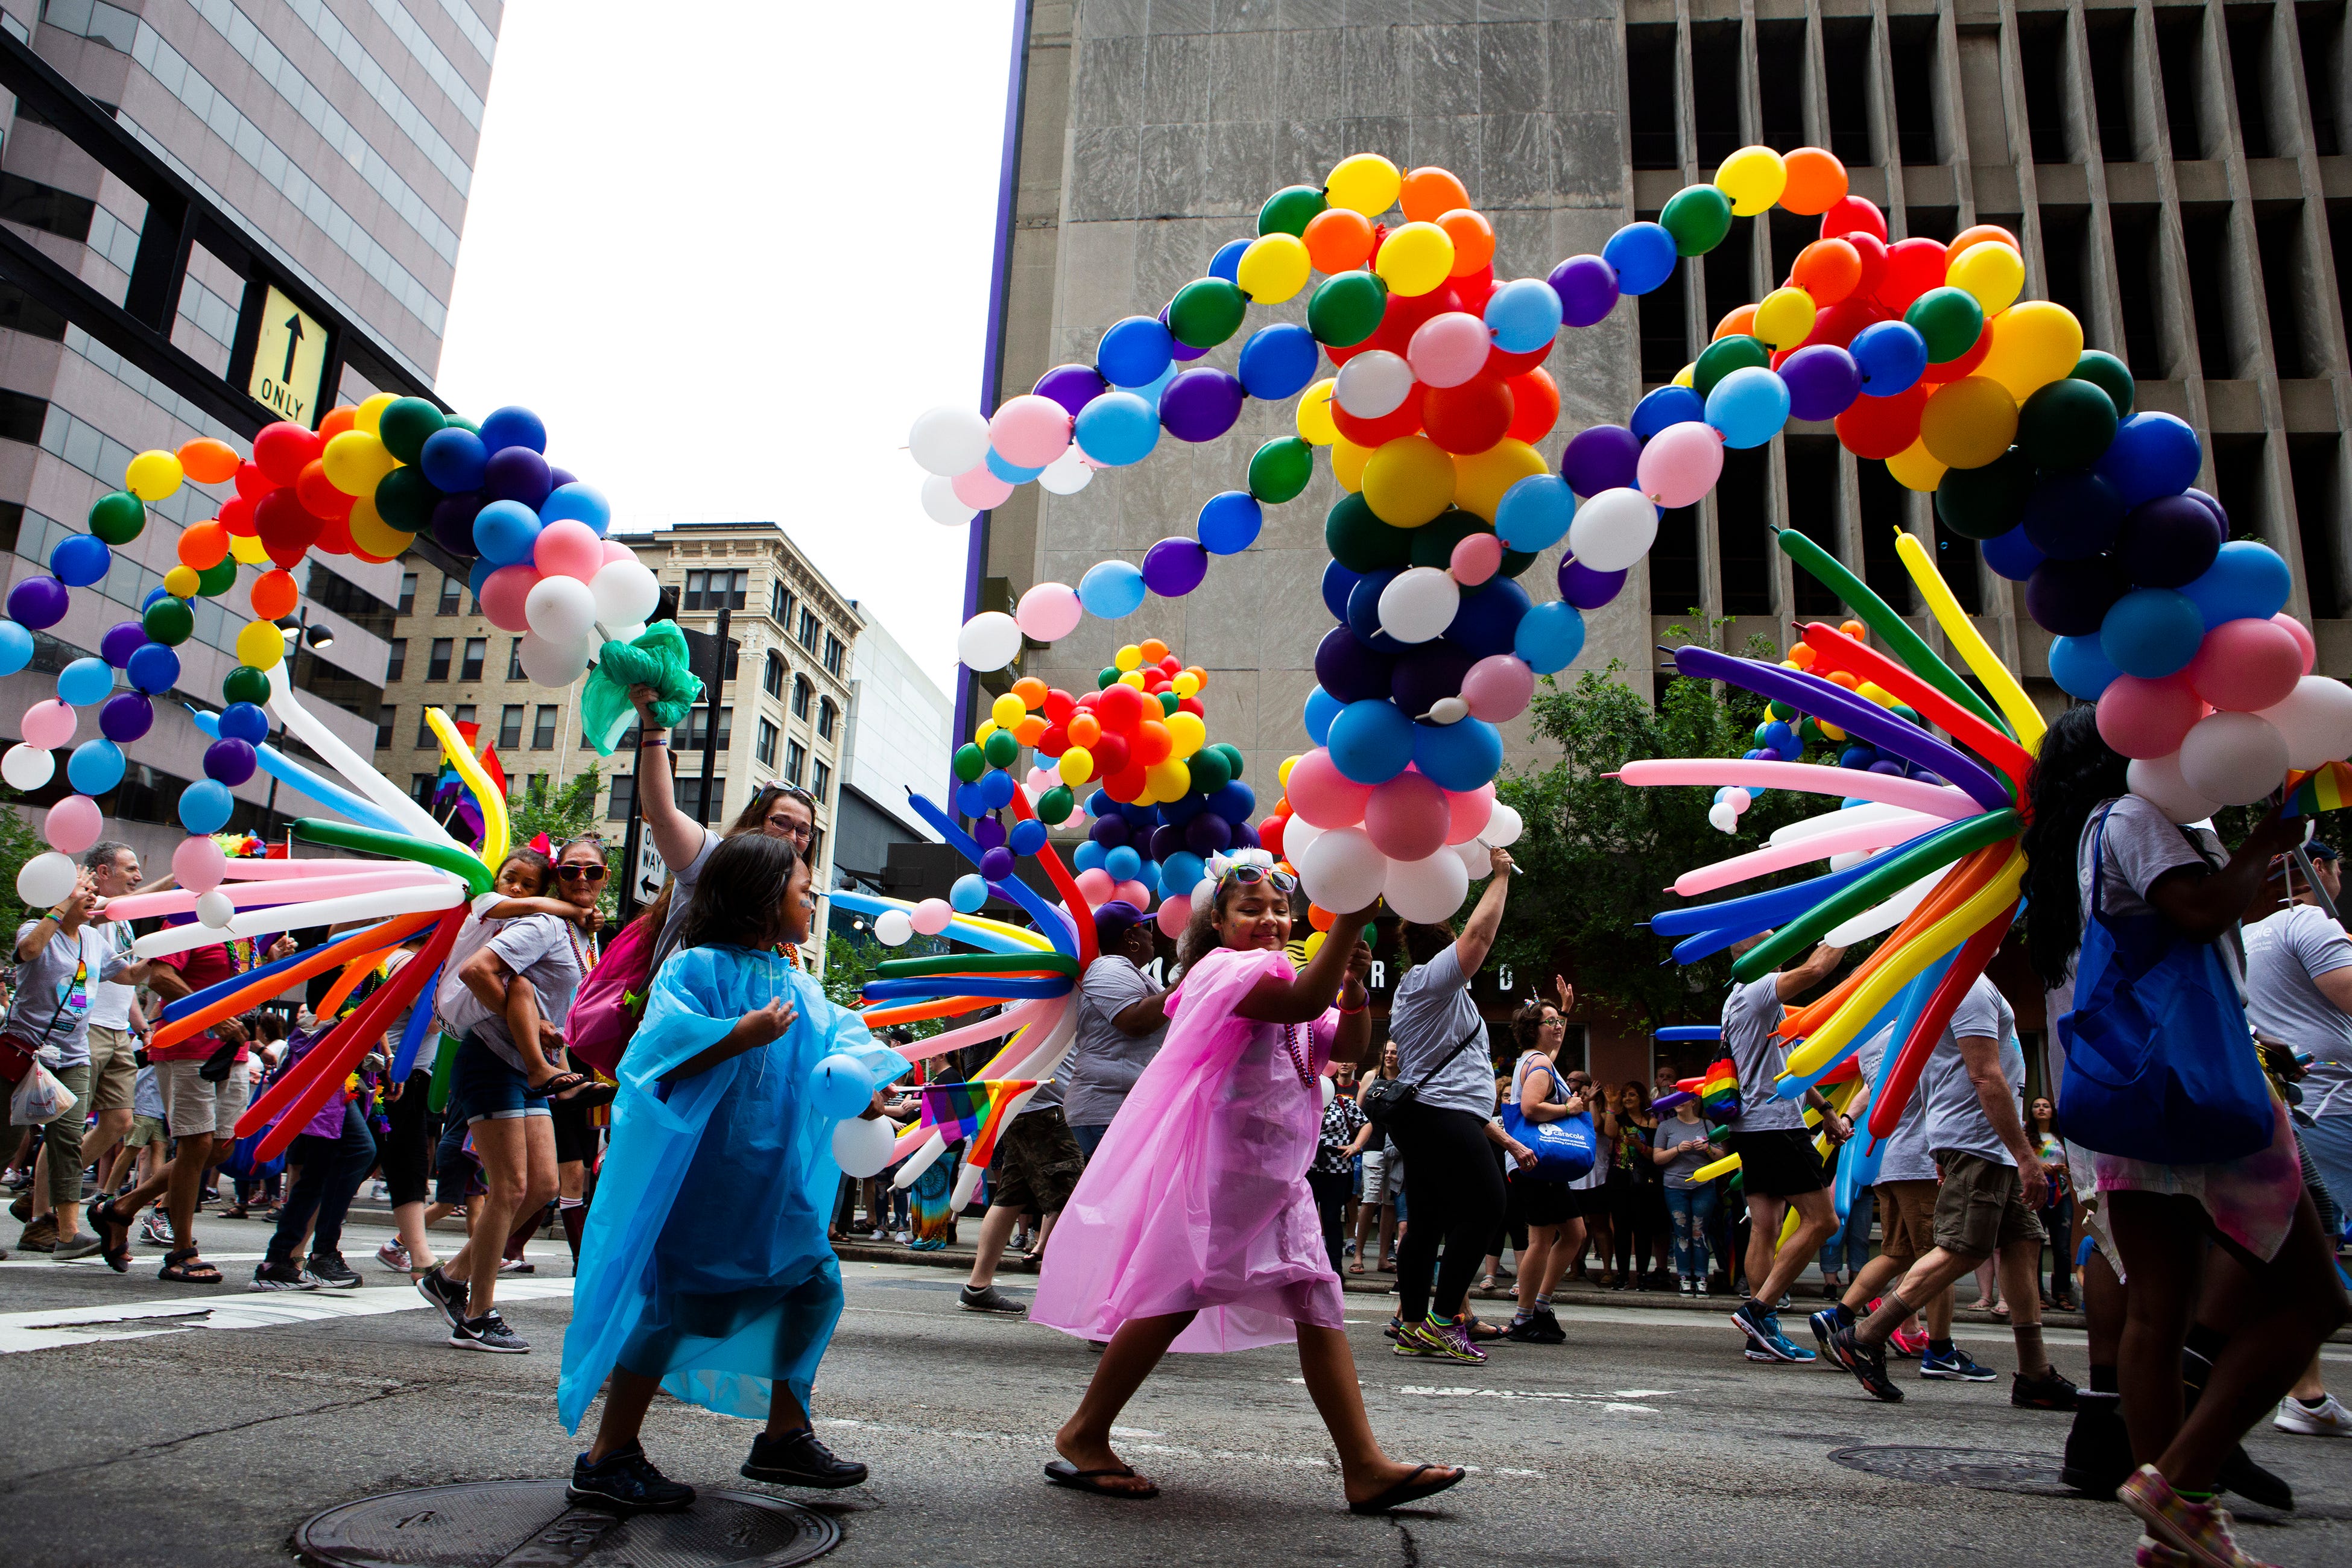 Gallery See photos from the Cincinnati Pride Parade 2019